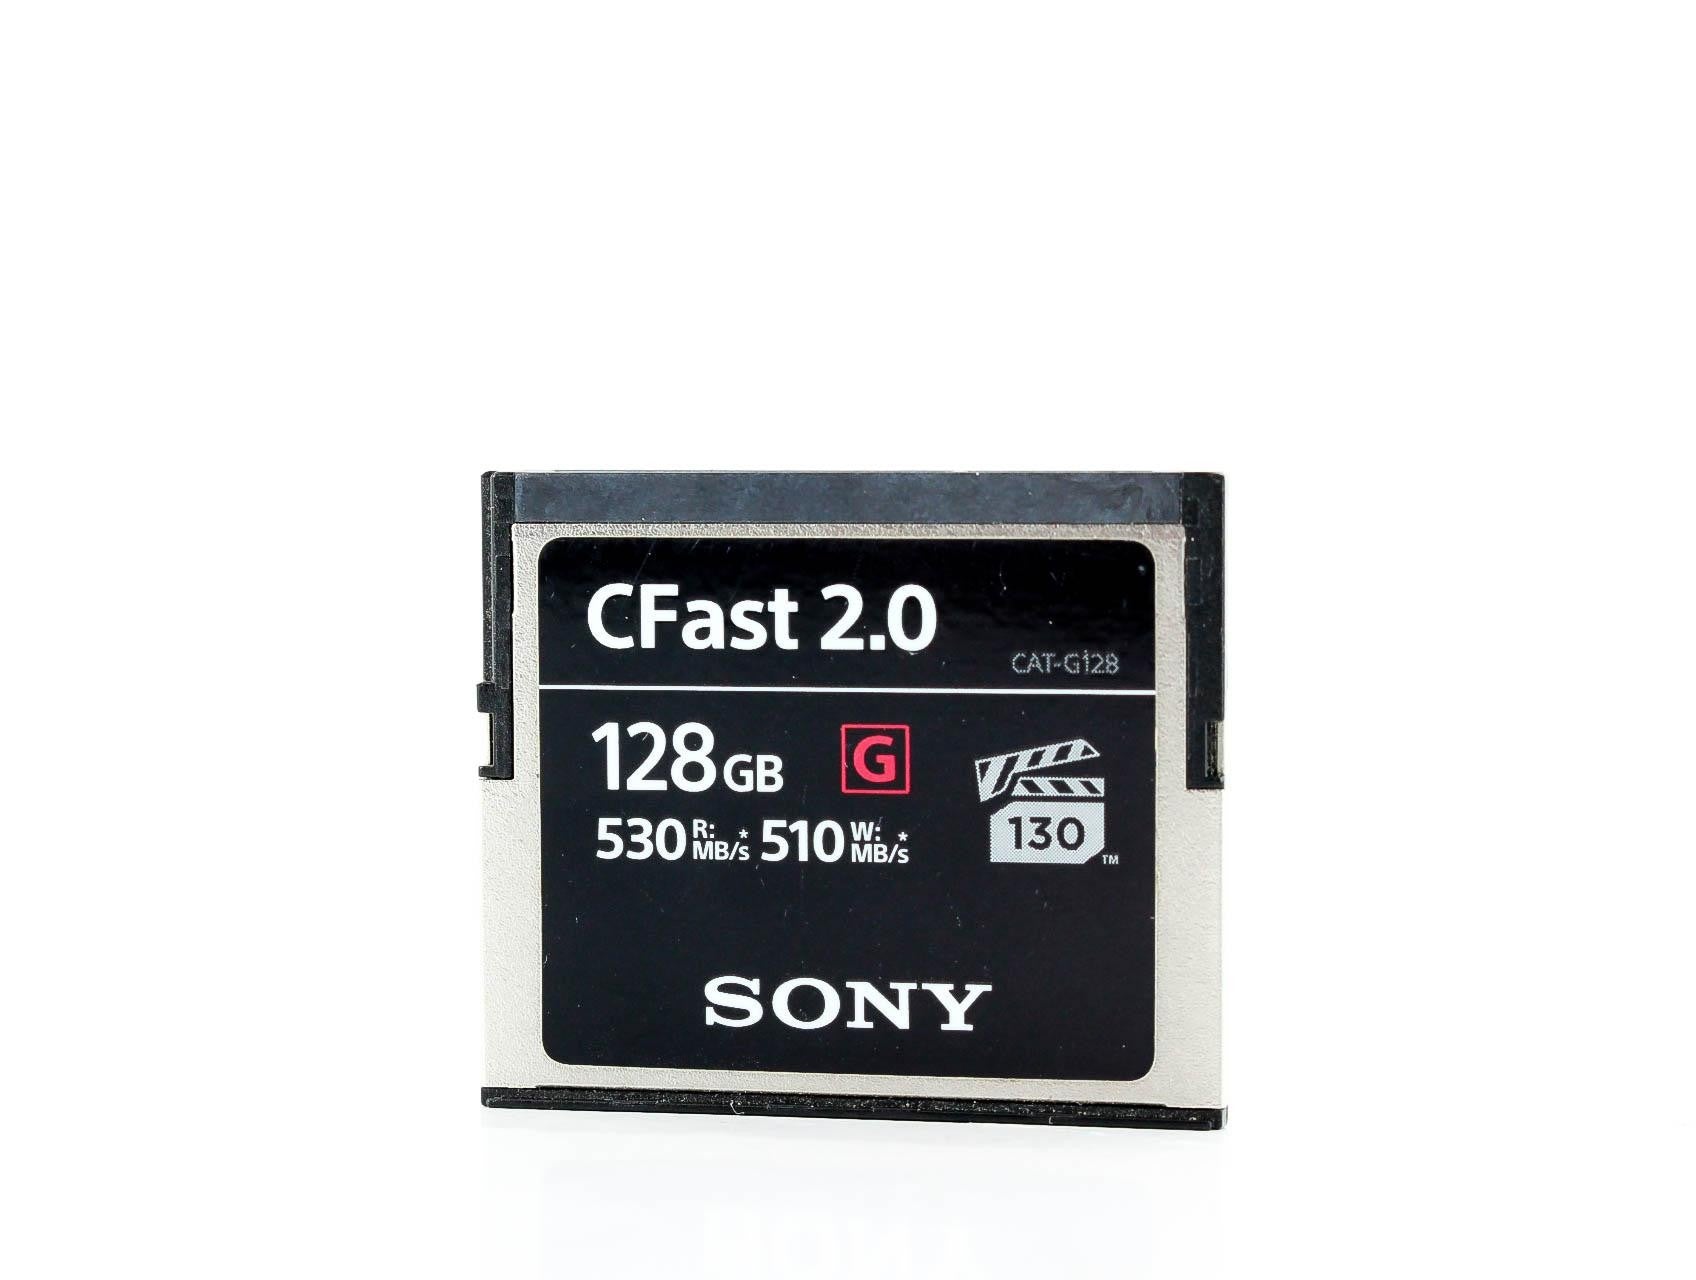 سوني CAT-G128 128GB CFast 2.0 G Series 530 ميجابايت/ثانية